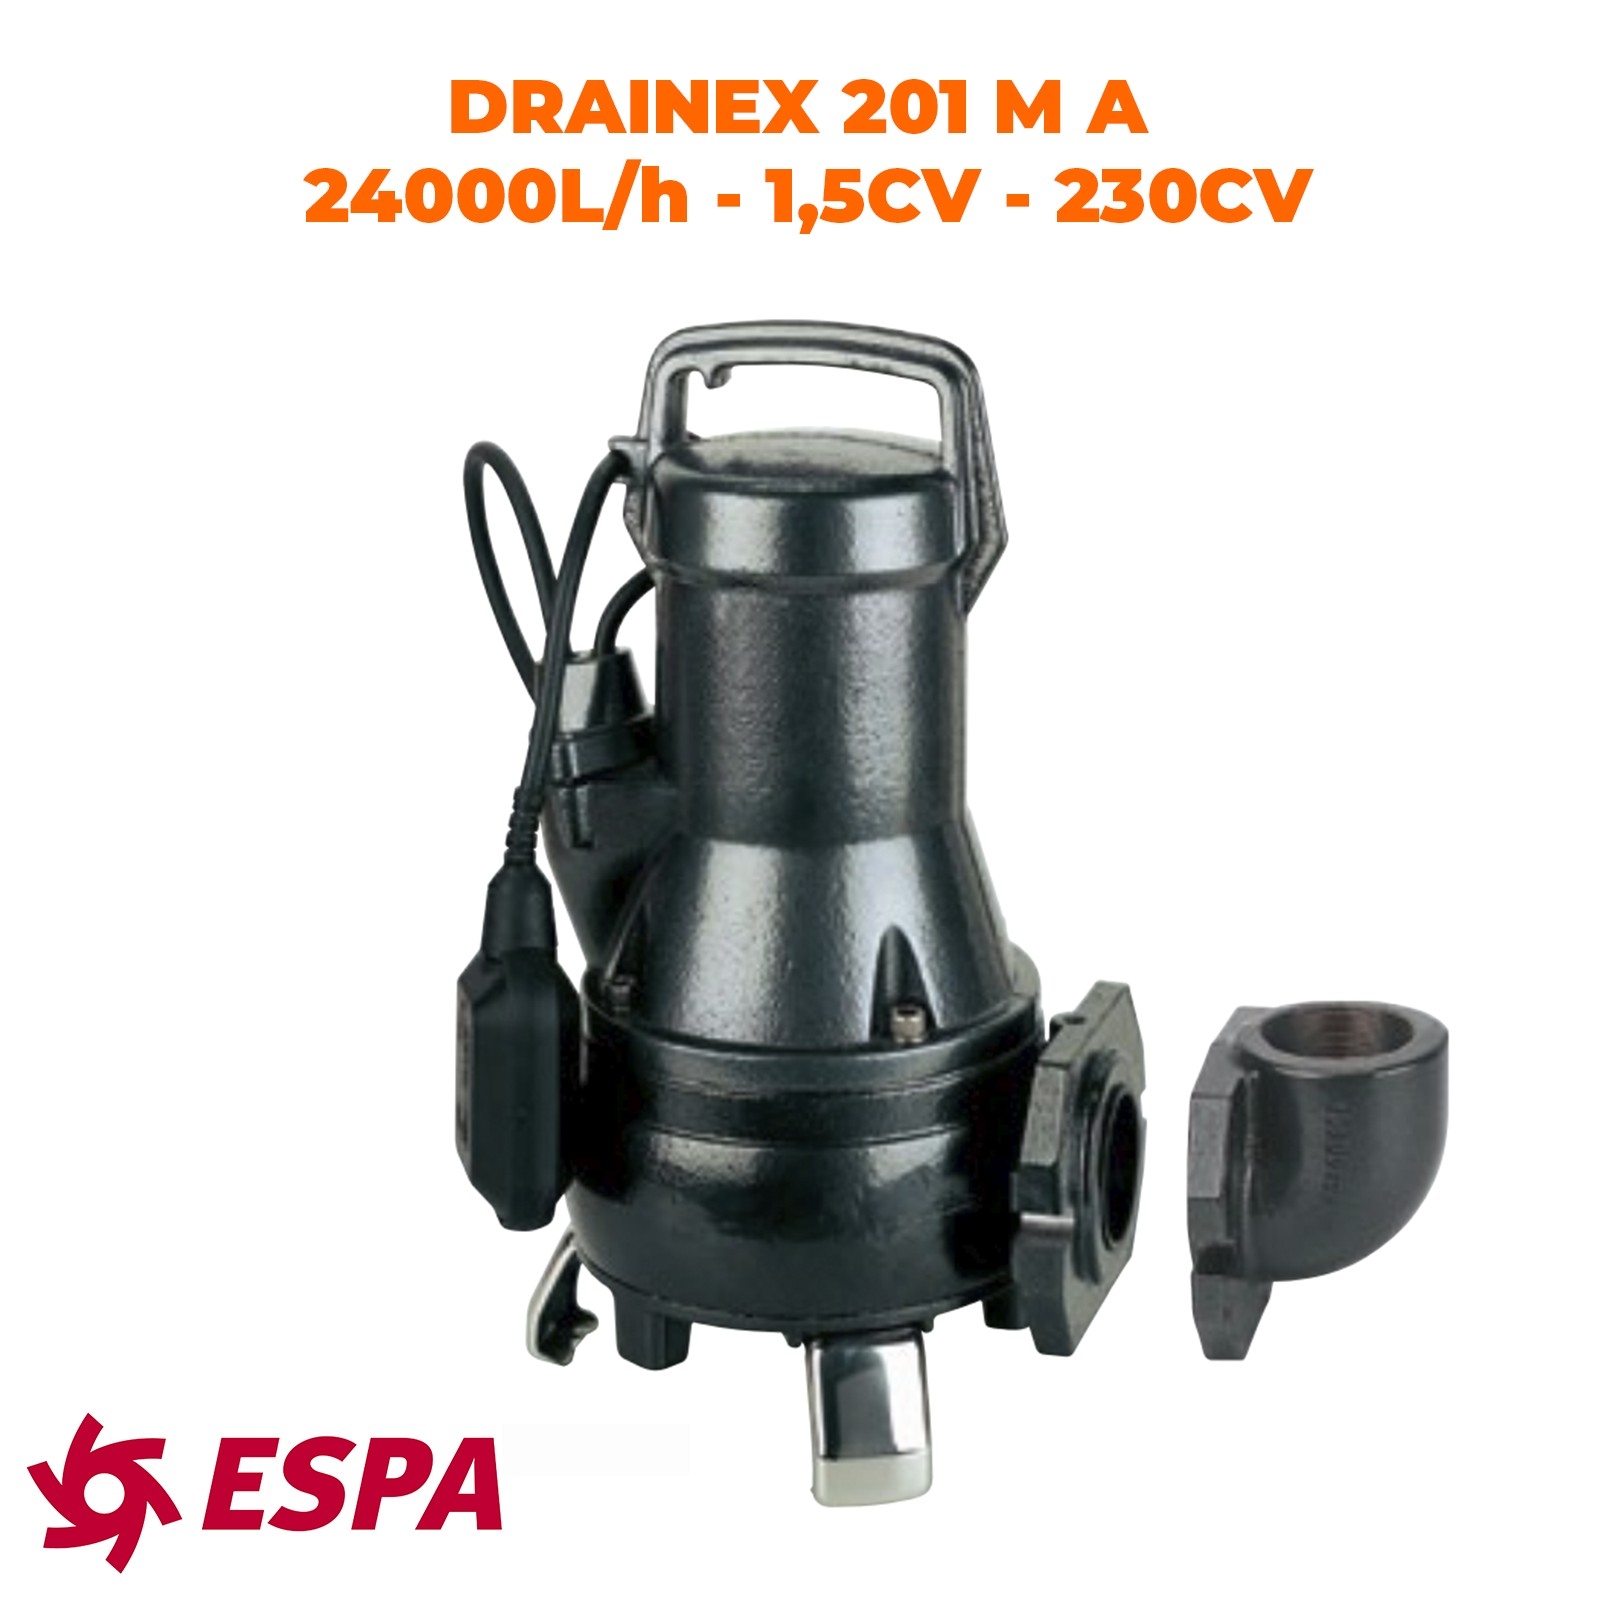 ESPA Pompe submersible de drainage pour eaux usées DRAINEX 201 MA - 24.000L/h - 10,7m max.